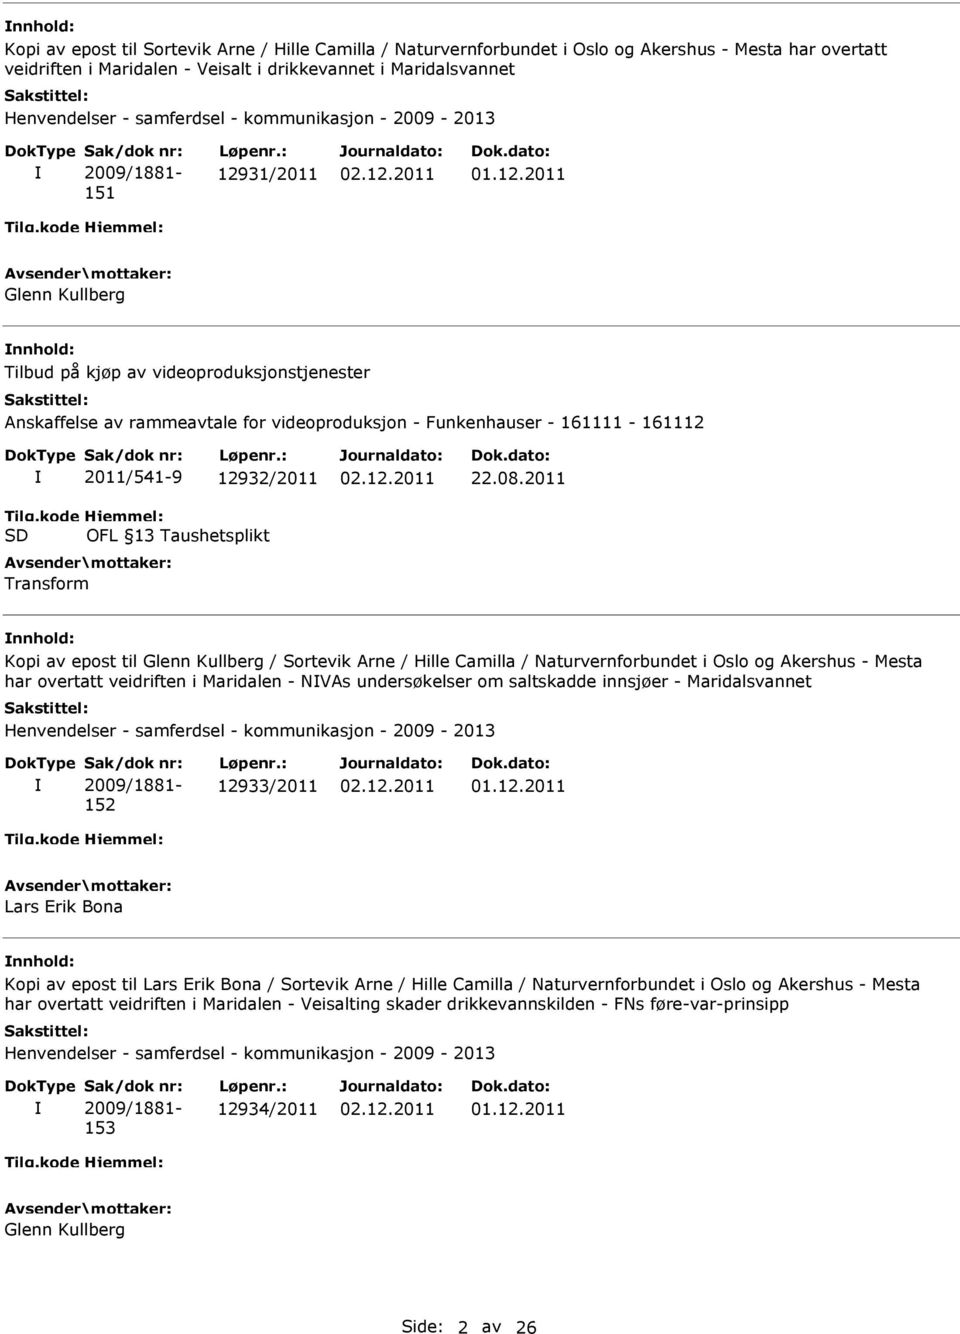 2011 Kopi av epost til Glenn Kullberg / Sortevik Arne / Hille Camilla / Naturvernforbundet i Oslo og Akershus - Mesta har overtatt veidriften i Maridalen - NVAs undersøkelser om saltskadde innsjøer -